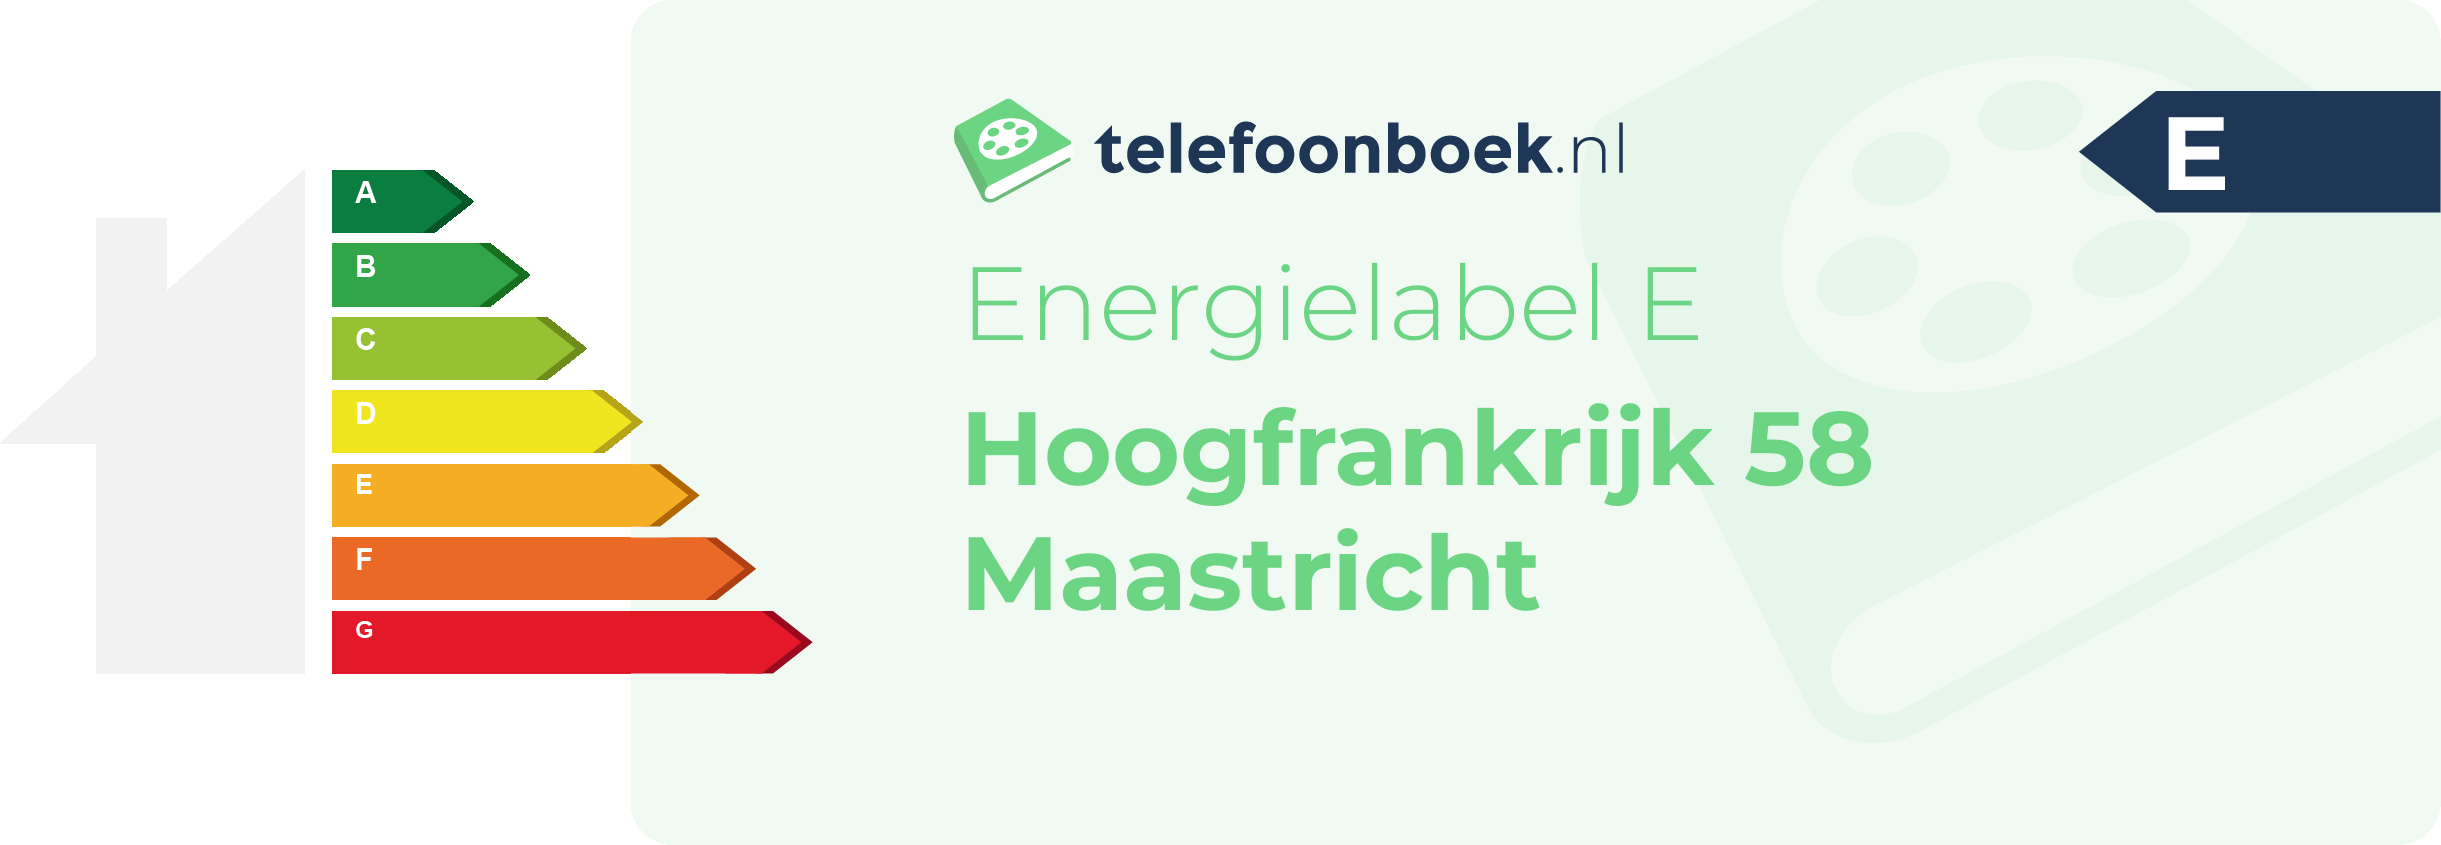 Energielabel Hoogfrankrijk 58 Maastricht